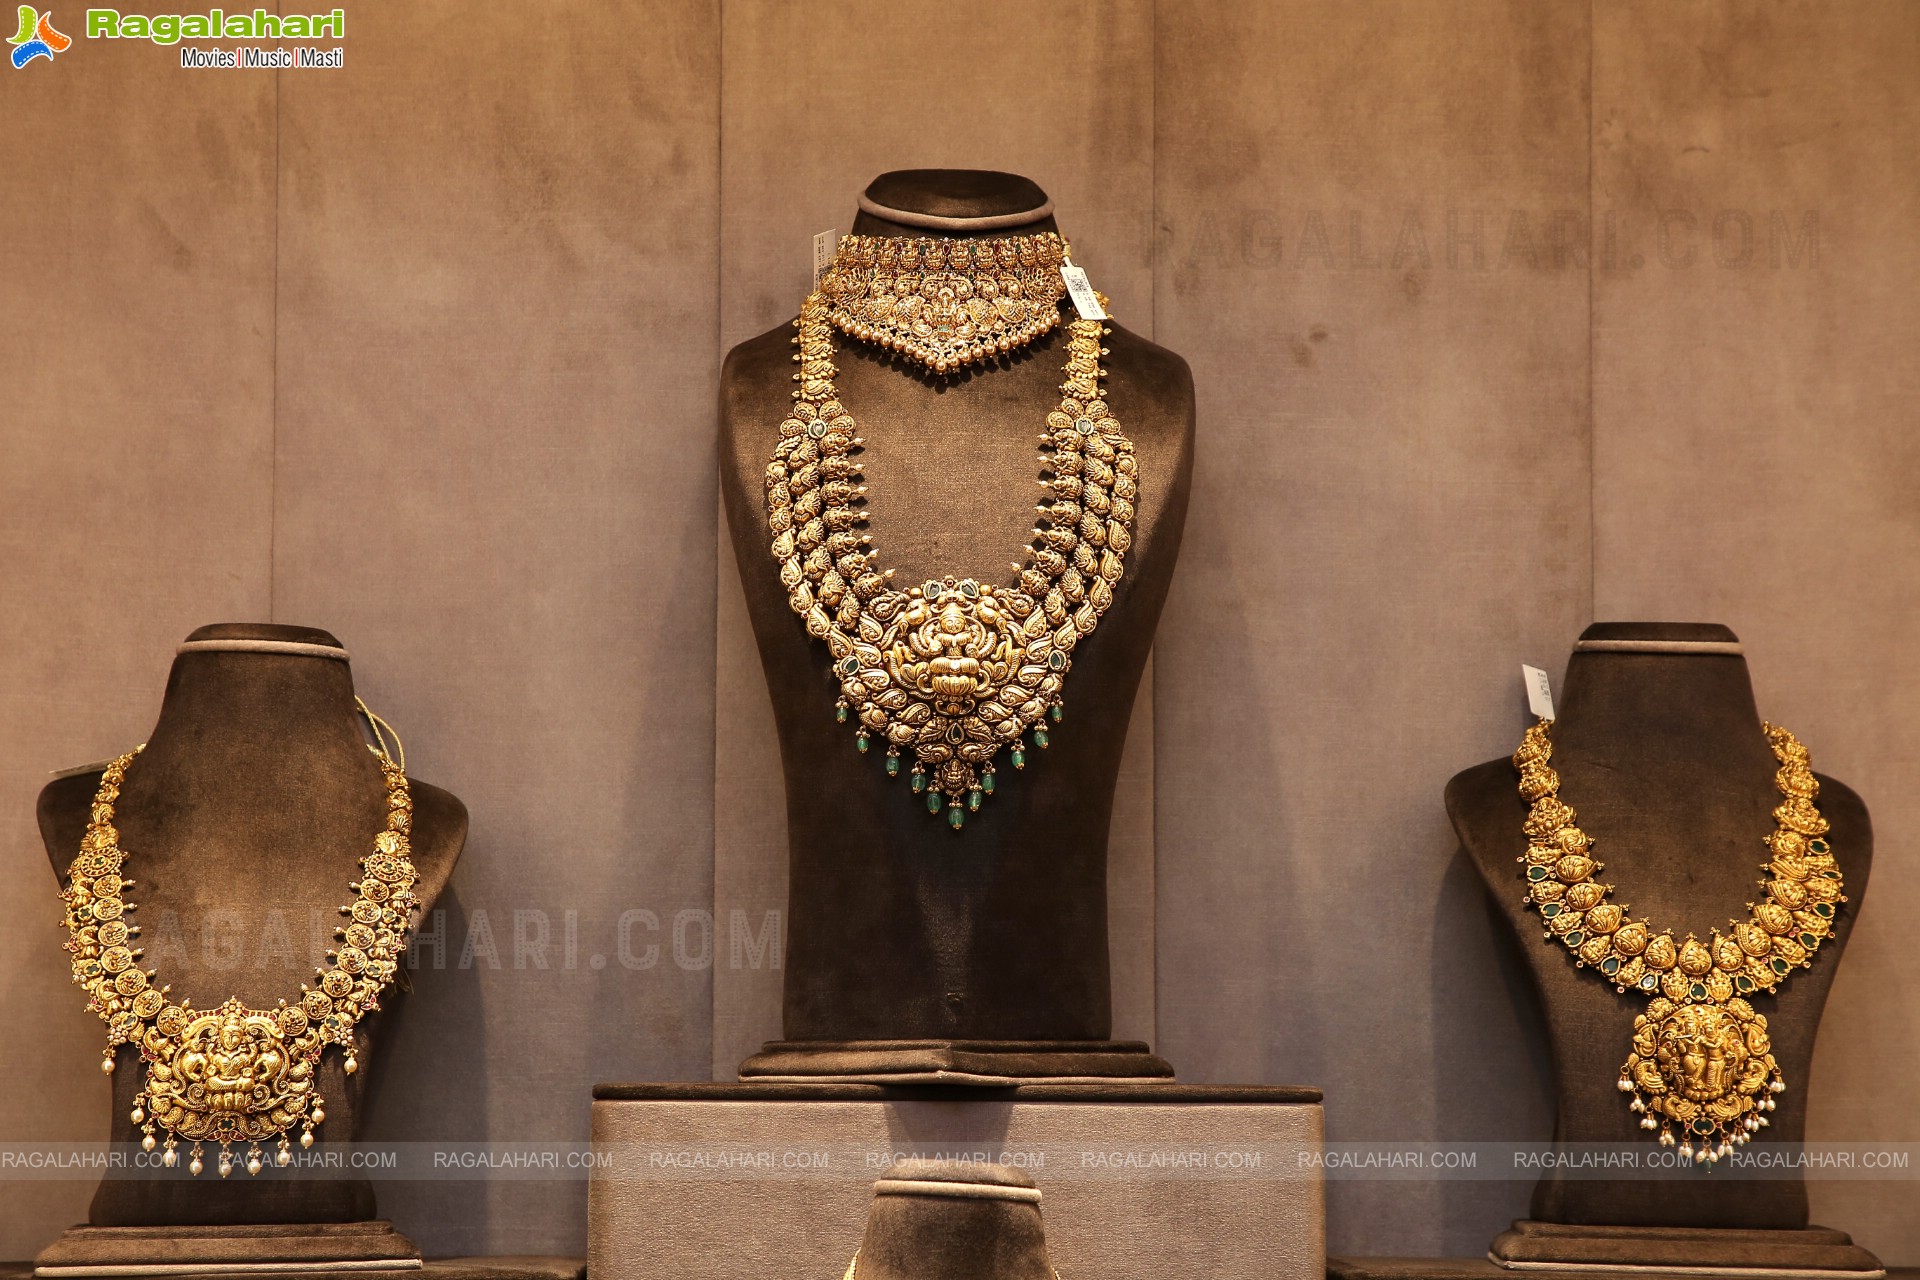 Sri Ashoka Jewellers Grand Launch at Somajiguda, Hyderabad